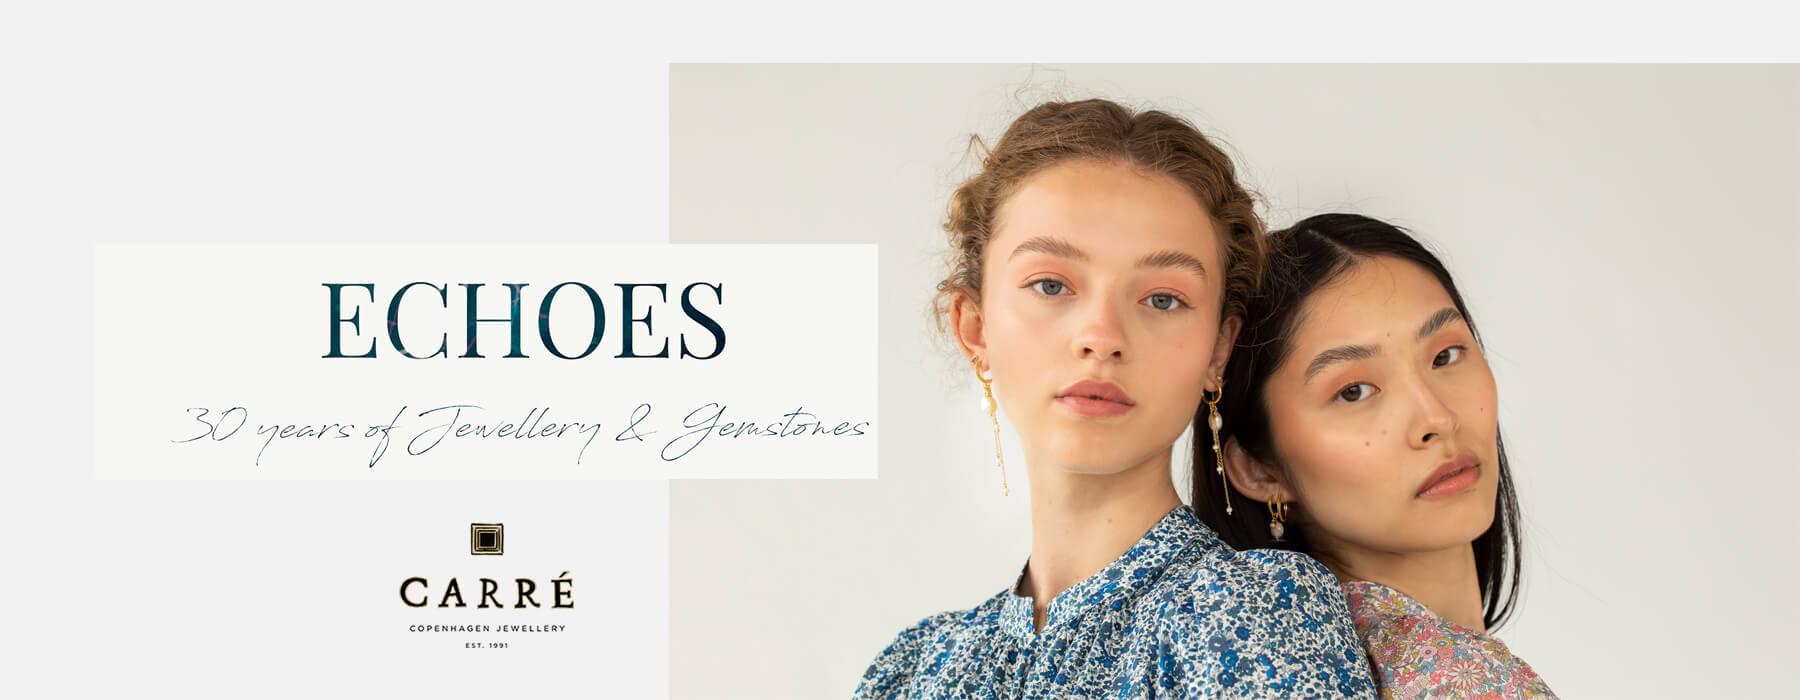 Carré Jewellery - Smykker kvinder i flotte farver til gode priser